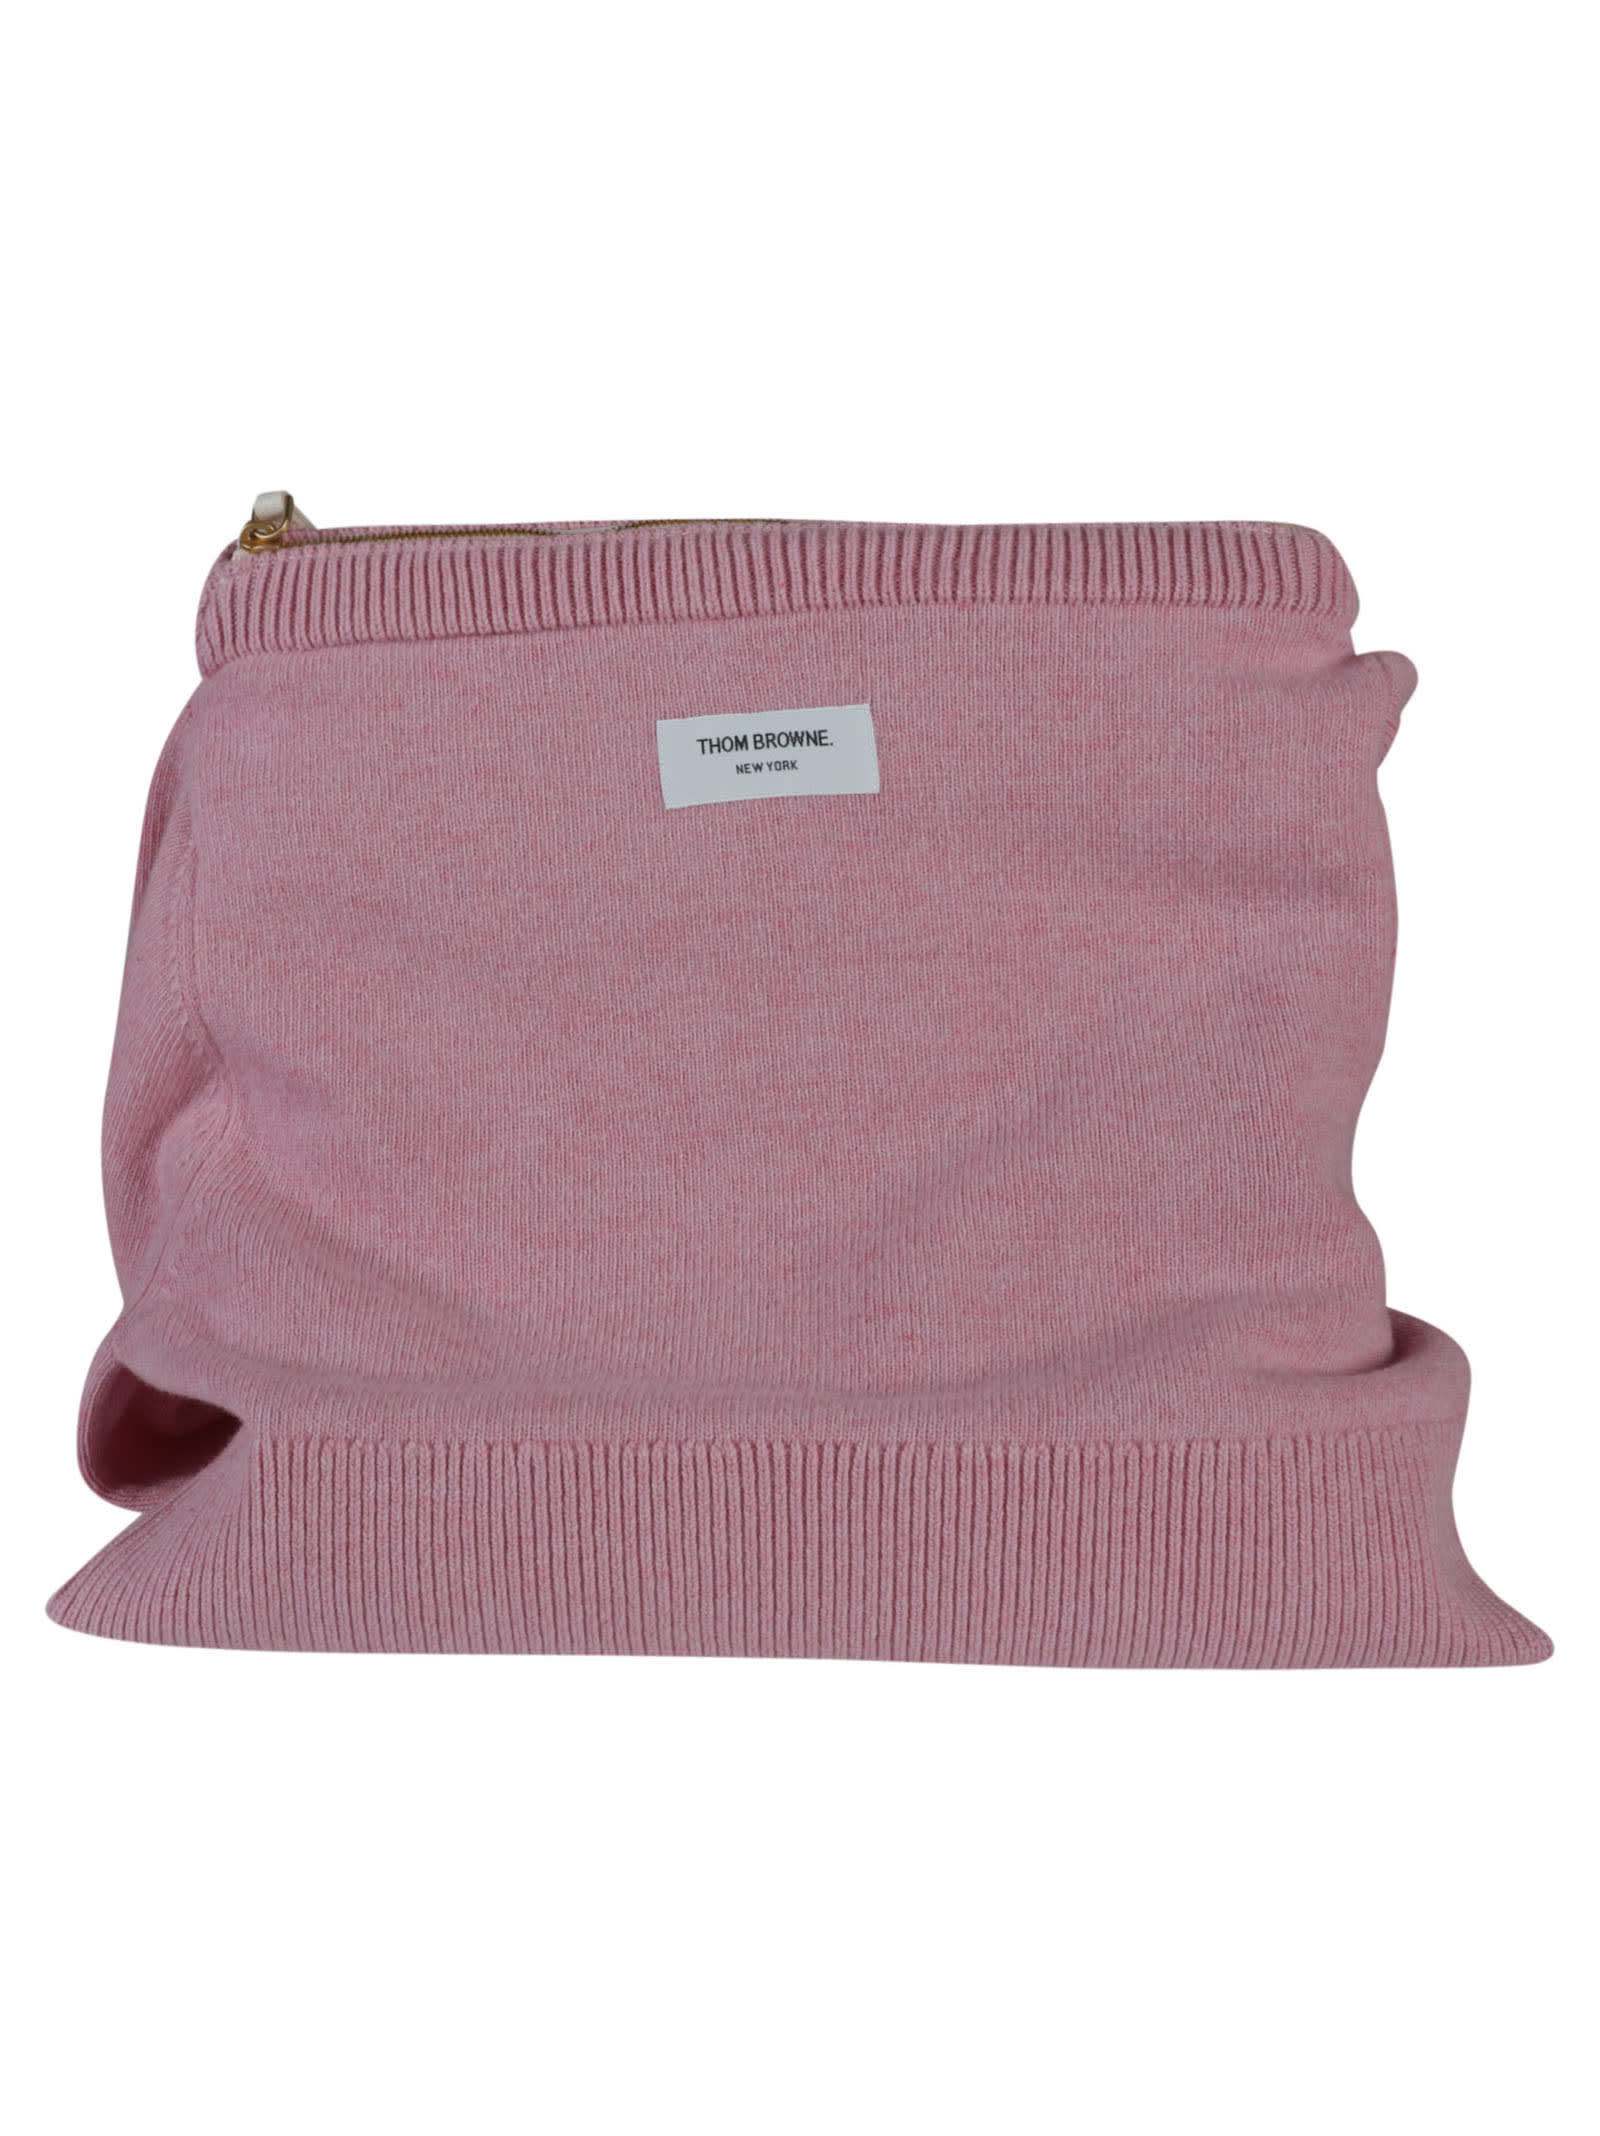 Thom Browne Sweater Shoulder Bag In Light Pink